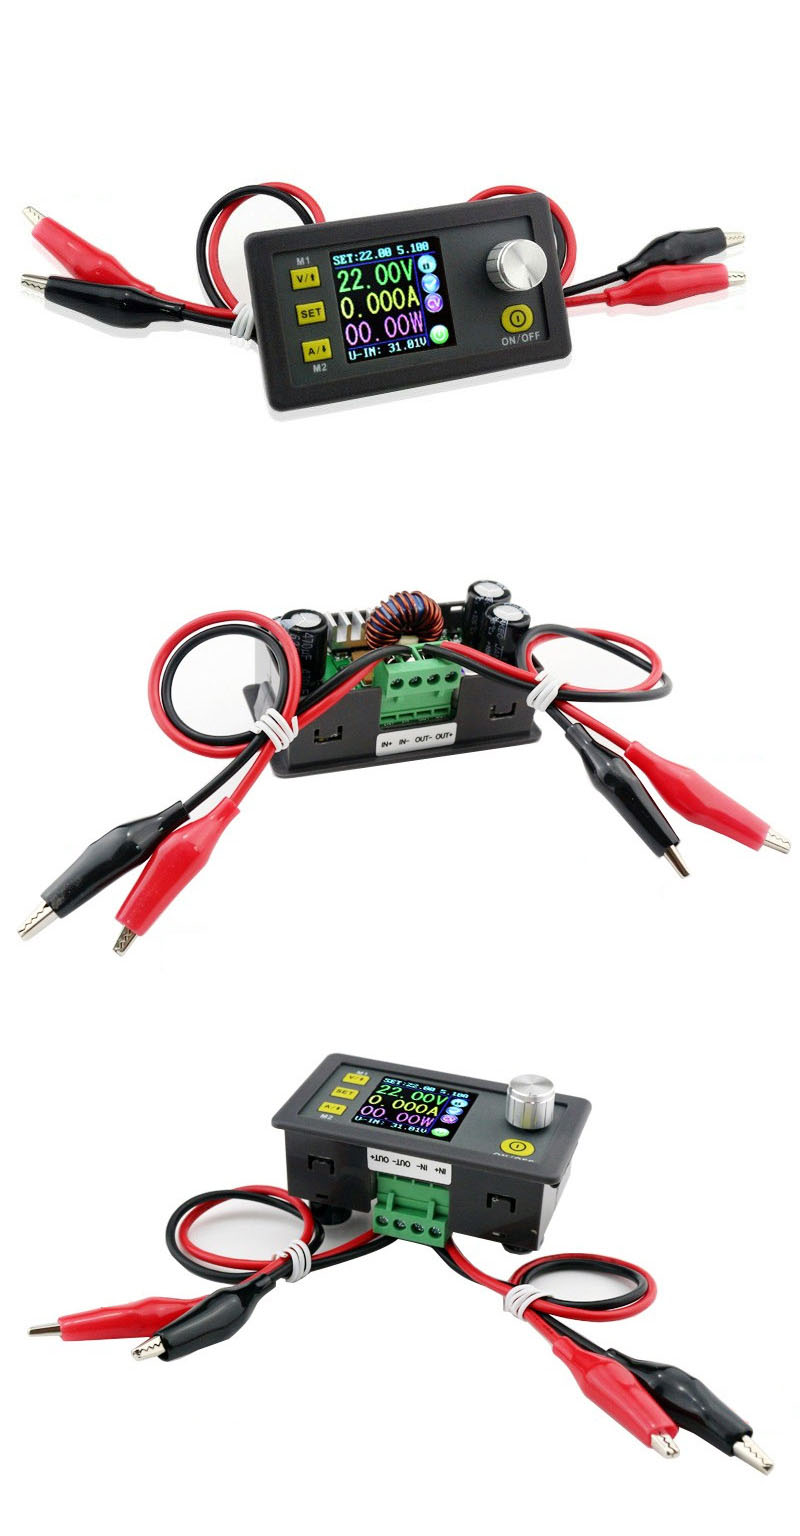 Digital-Control-Power-Supply-50V-5A-Adjustable-Constant-Voltage-Constant-Current-Tester-DC-Voltmeter-1593471-5